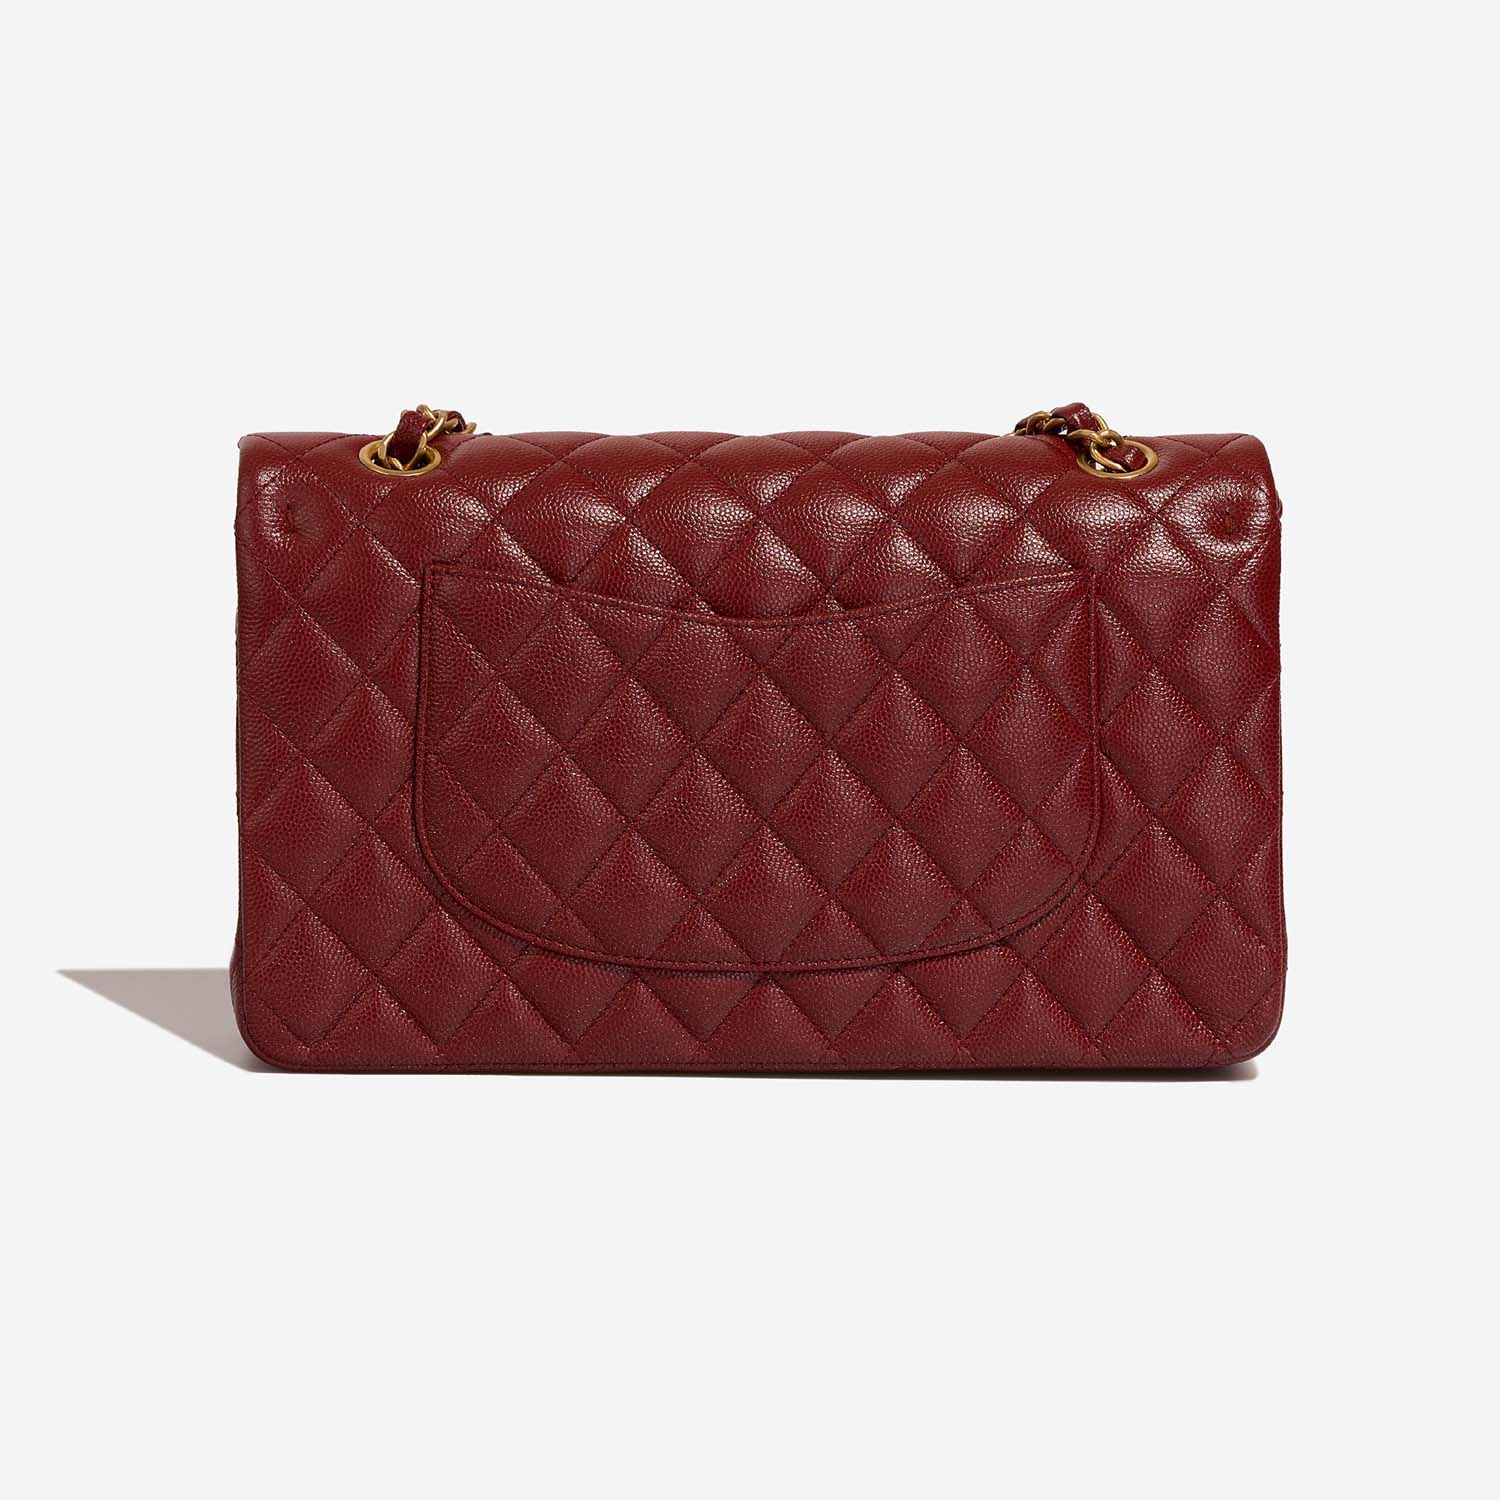 Sac Chanel d'occasion Classique Medium Caviar Rouge Rouge | Vendez votre sac de créateur sur Saclab.com